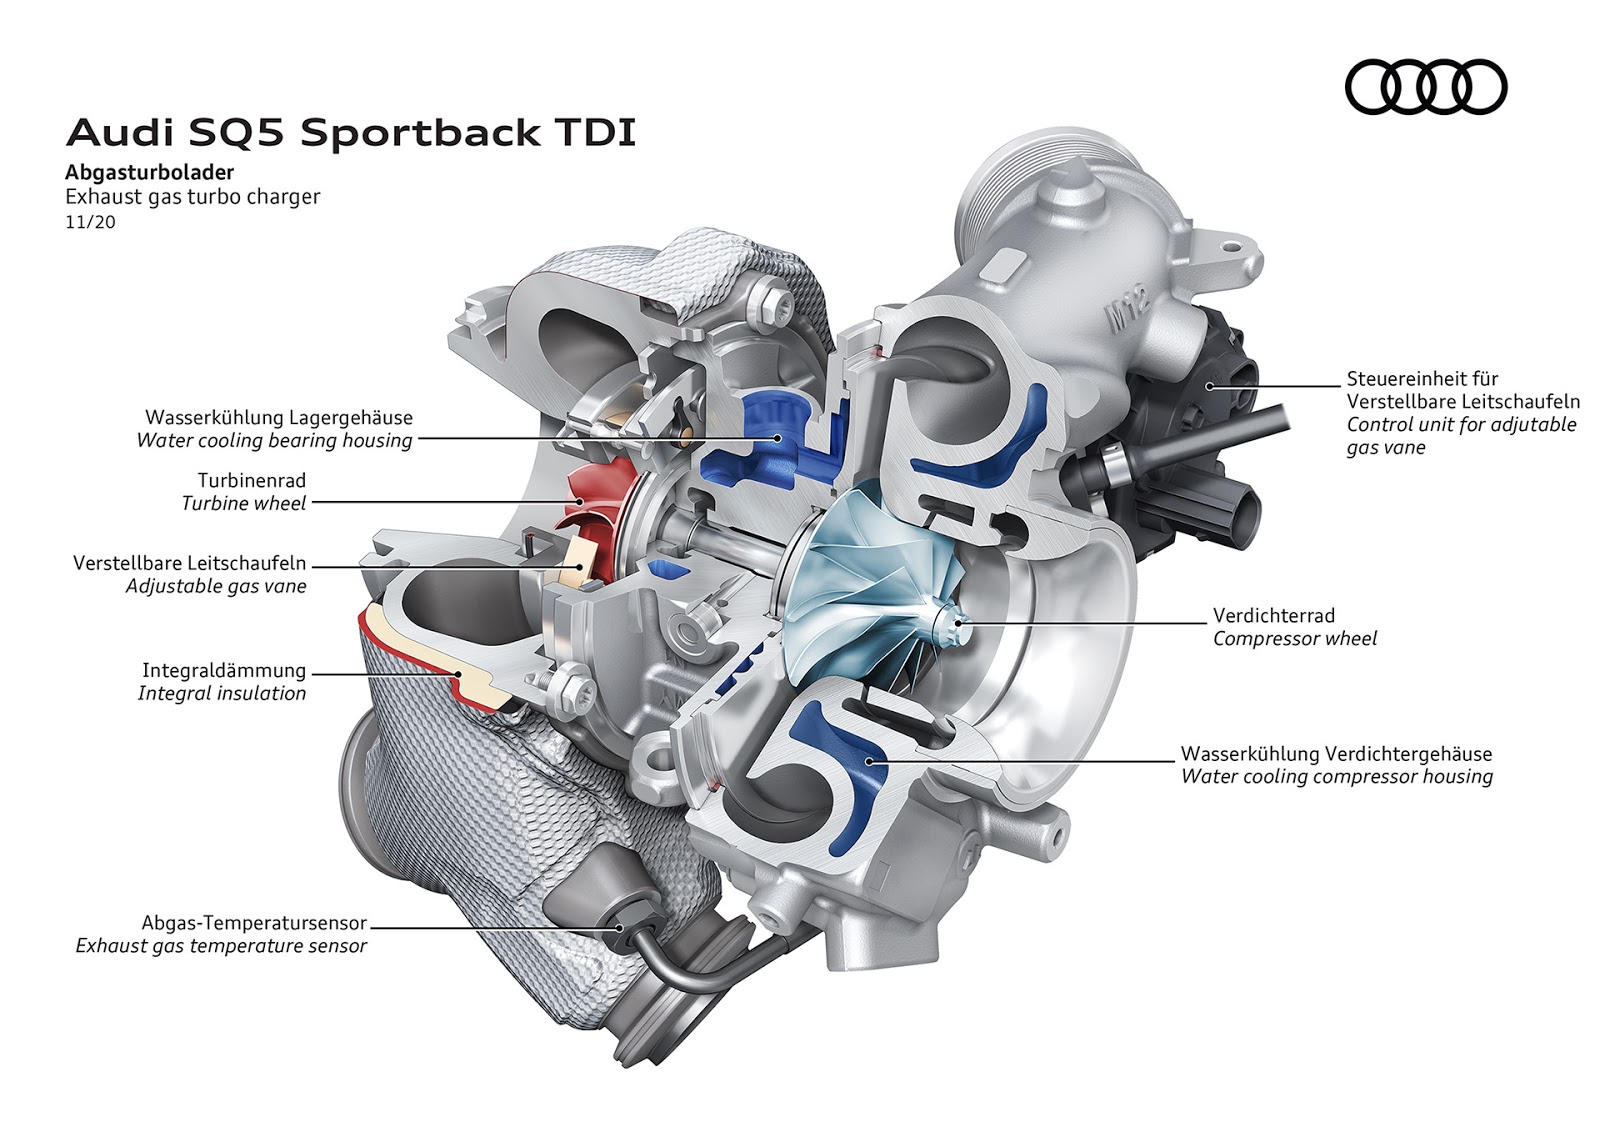 AUDI2BSQ52BSPORTBACK2BTDI 9 Audi SQ5 Sportback TDI: η σπορ έκδοση στην κορυφή της γκάμας του μοντέλου